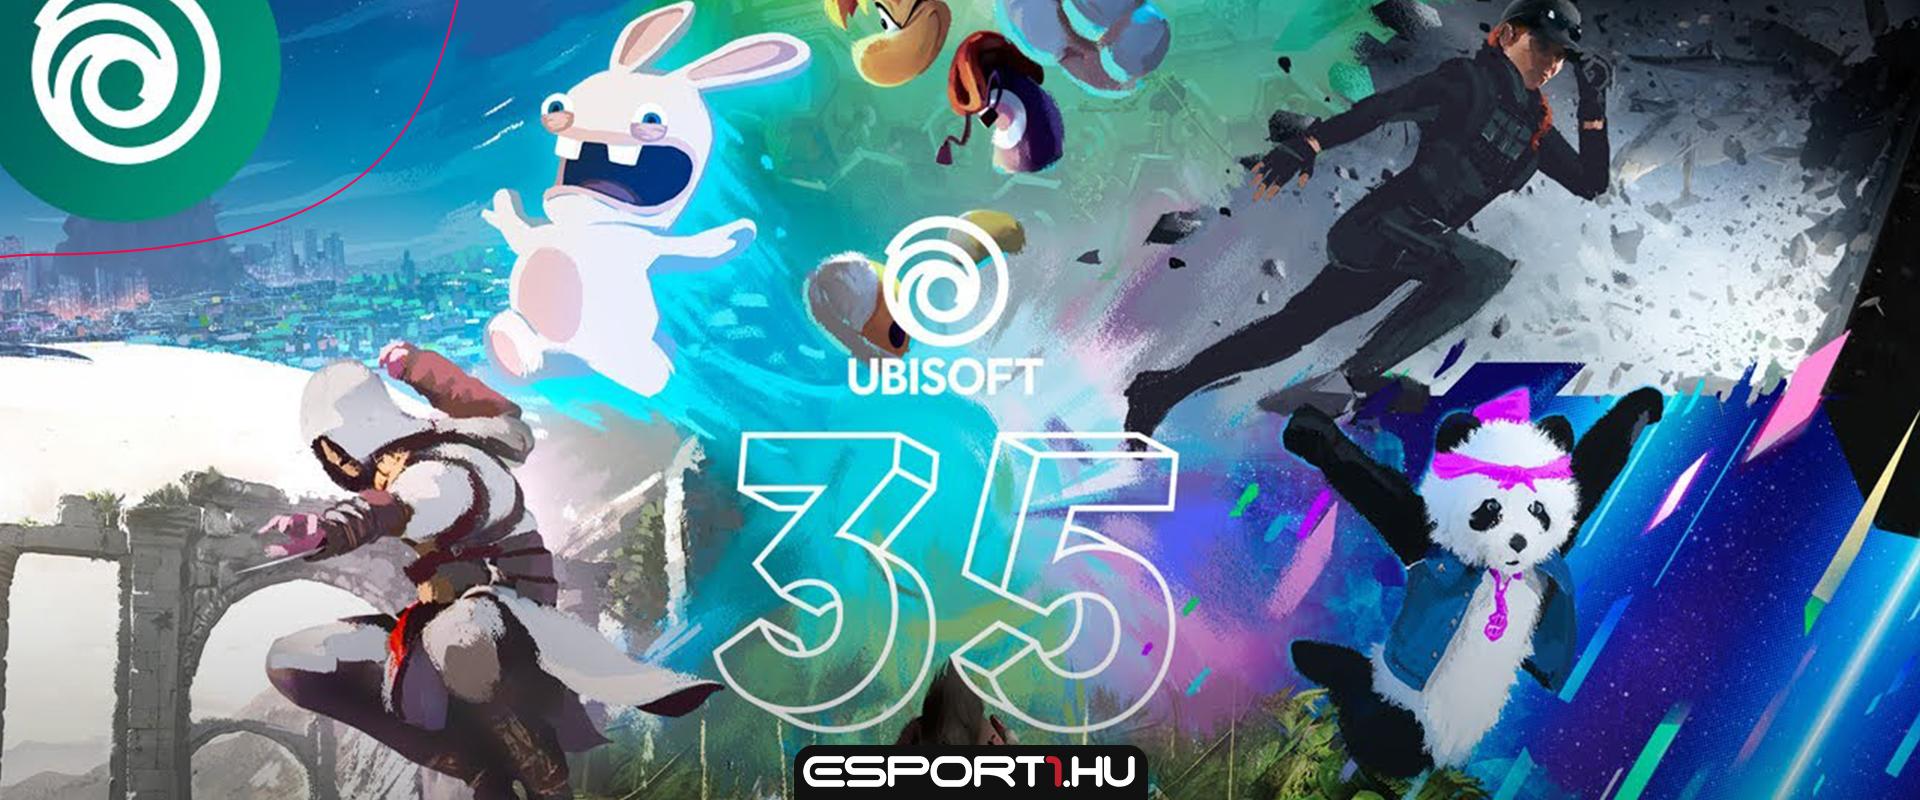 A Ubisoft leárazásokkal és ingyenes jutalmakkal ünnepli a 35. születésnapját